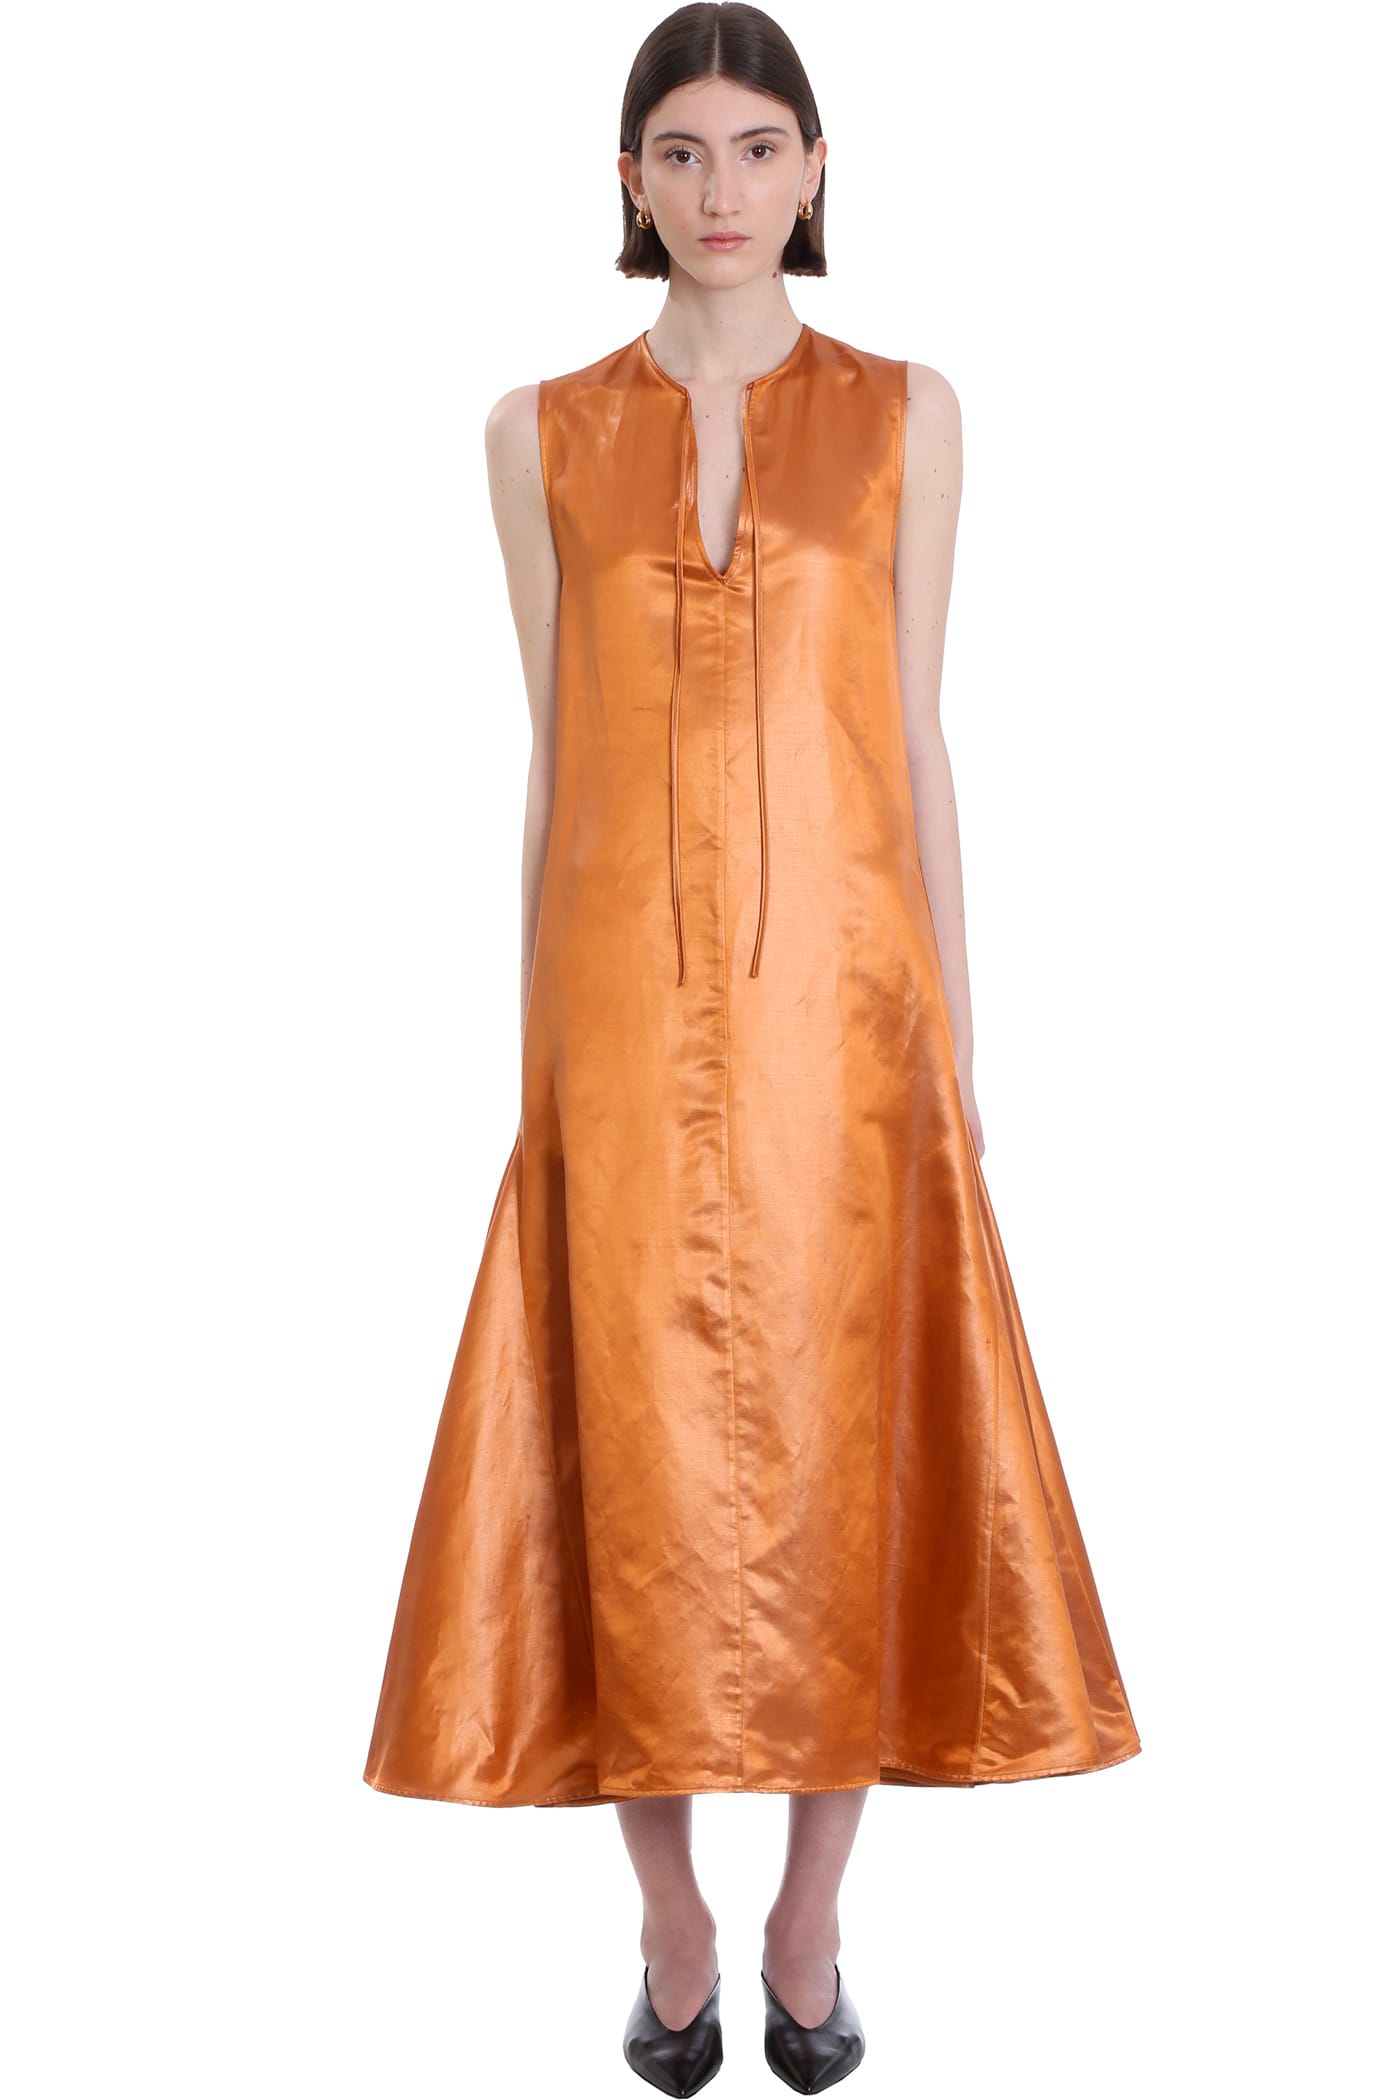 Jil Sander Dress In Orange Linen